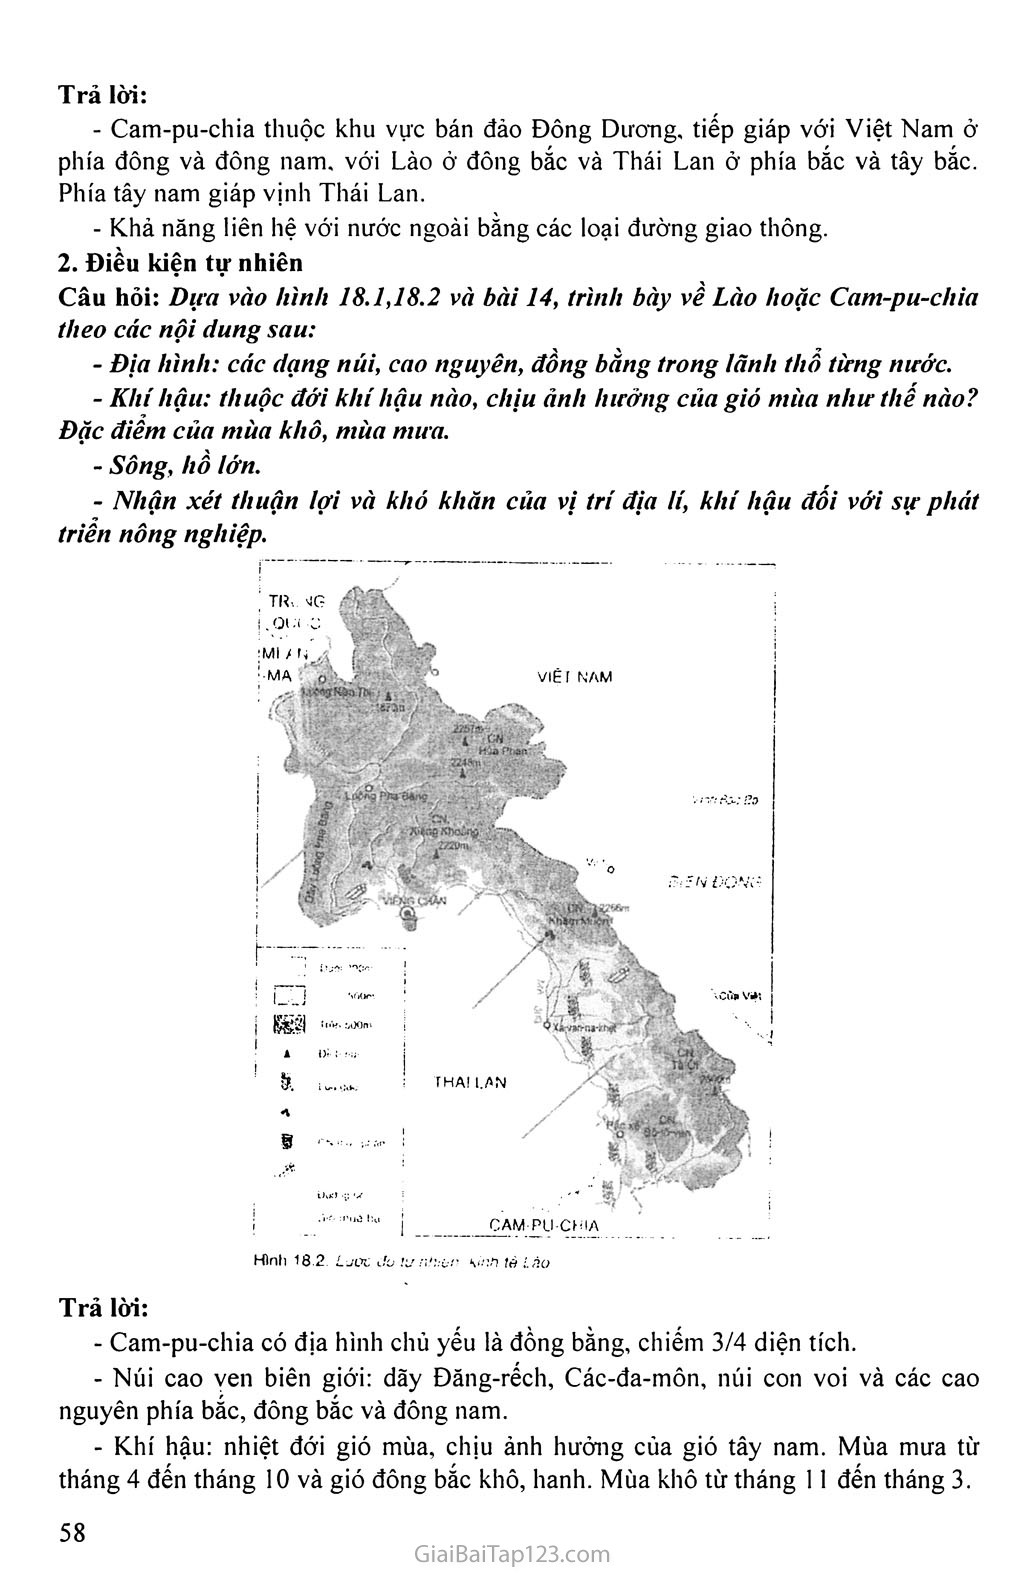 Bài 18. Thực hành: Tìm hiểu Lào và Cam - pu - chia trang 2